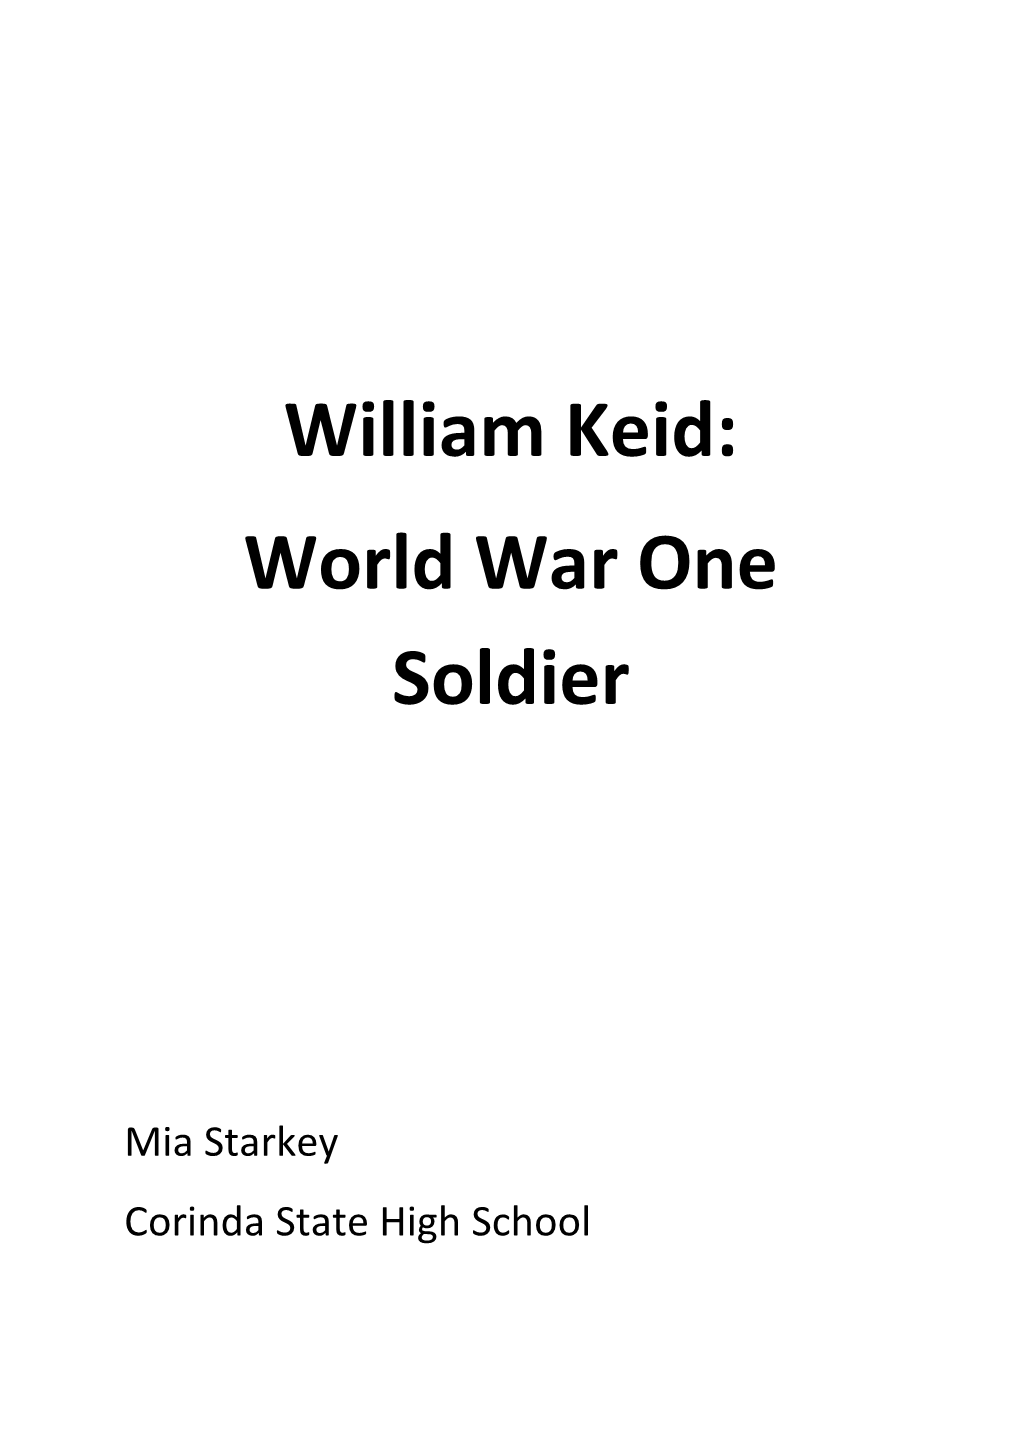 World War One Soldier